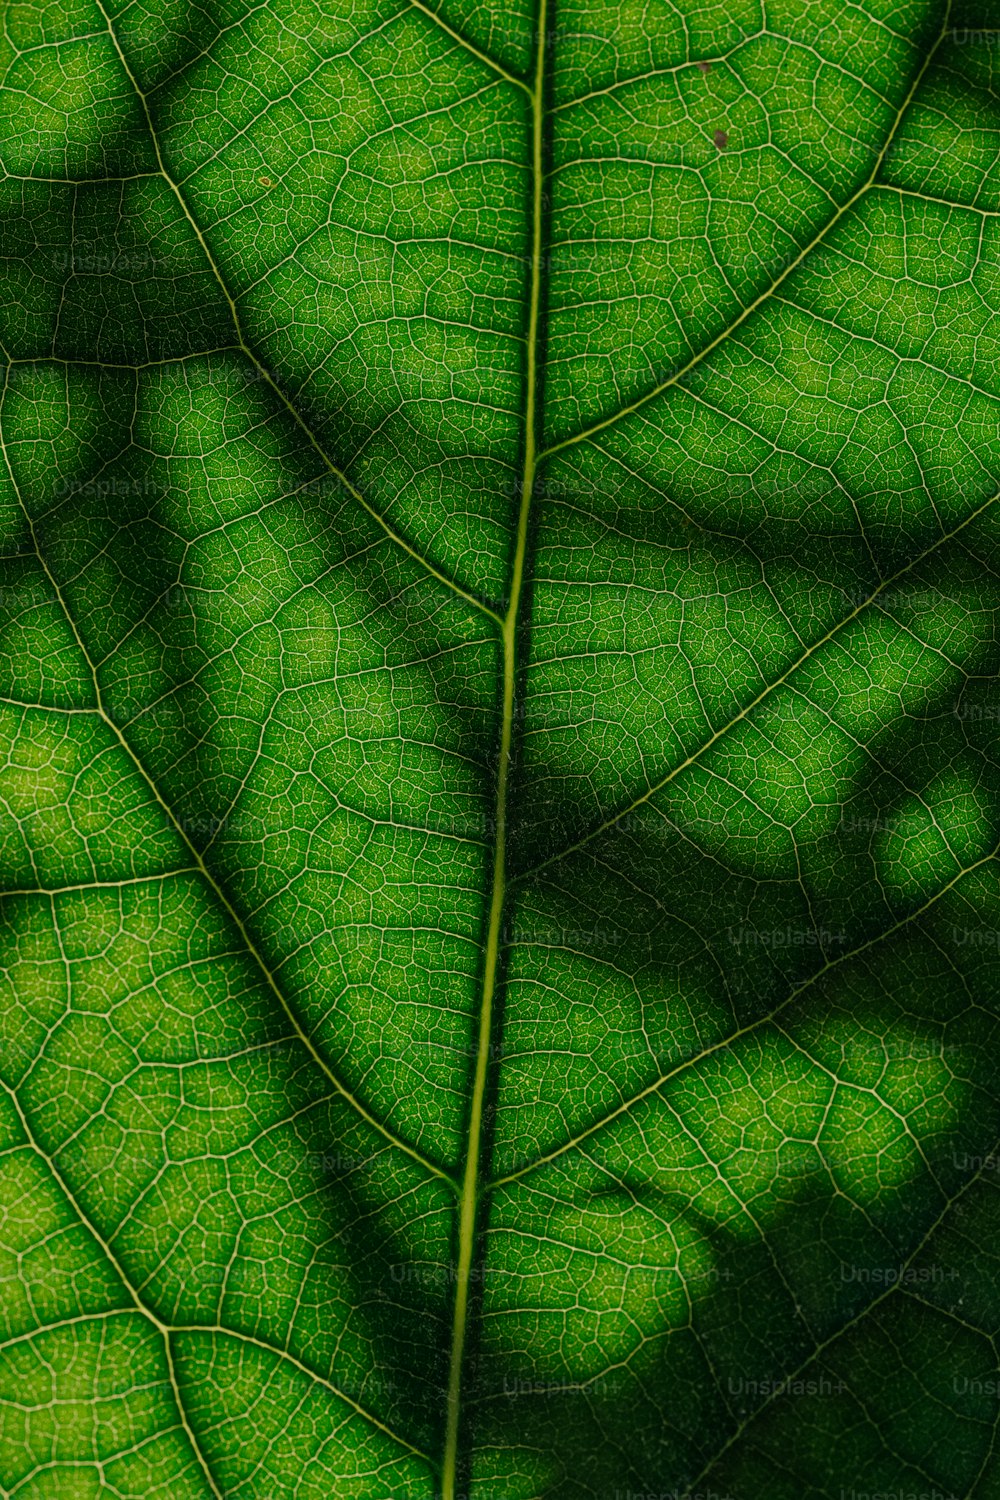 L’ombre d’une feuille sur une feuille verte